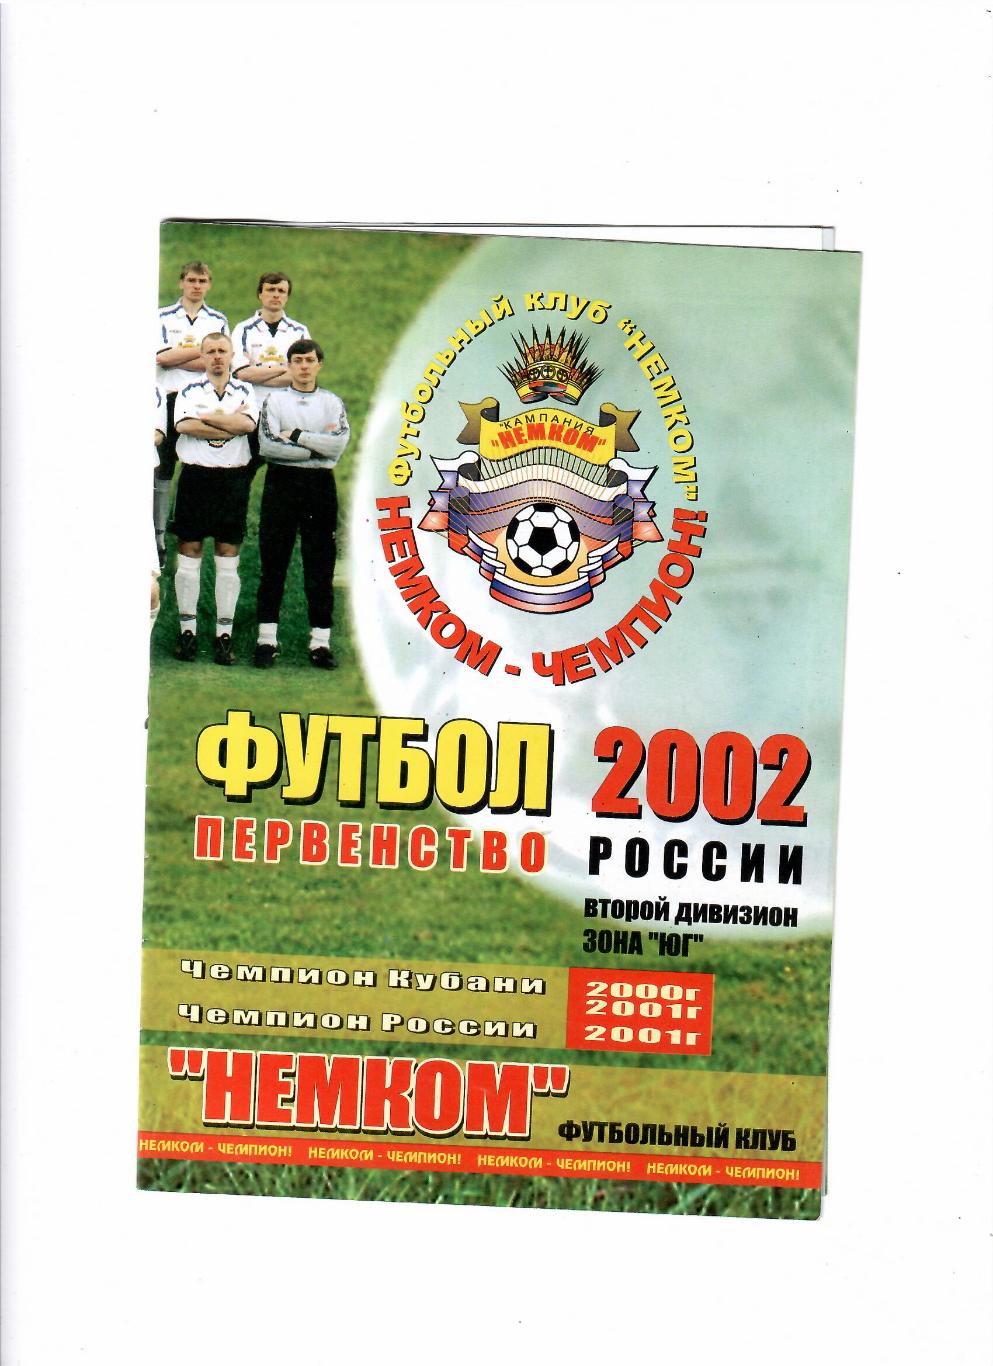 Немком Краснодар-Динамо Ставрополь 2002